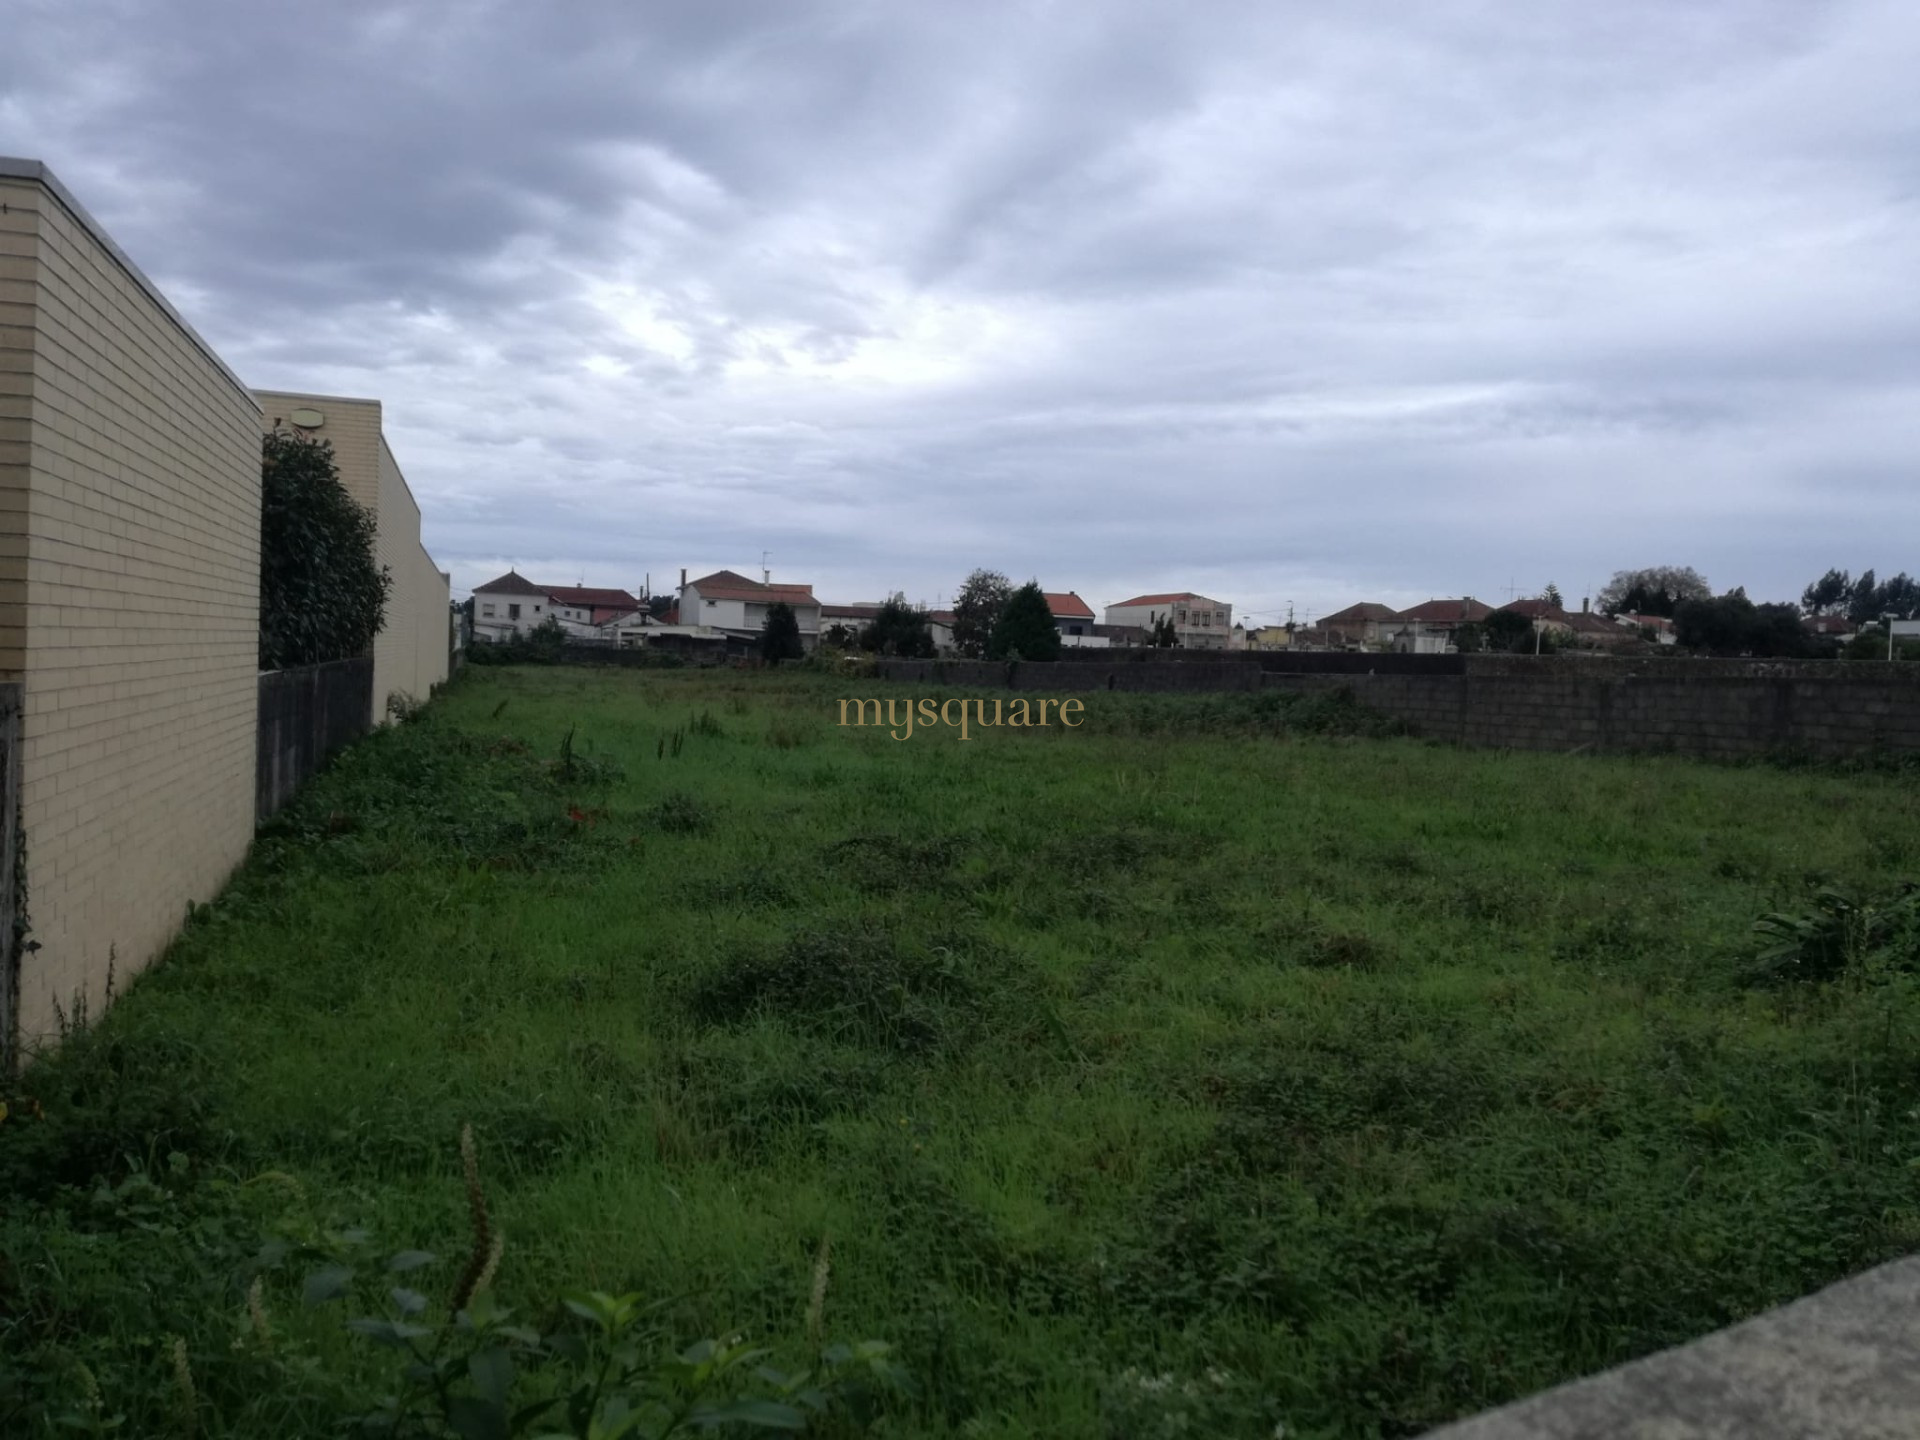 Terreno para construcción de vivienda unifamiliar, Serzedo, Vila Nova de Gaia